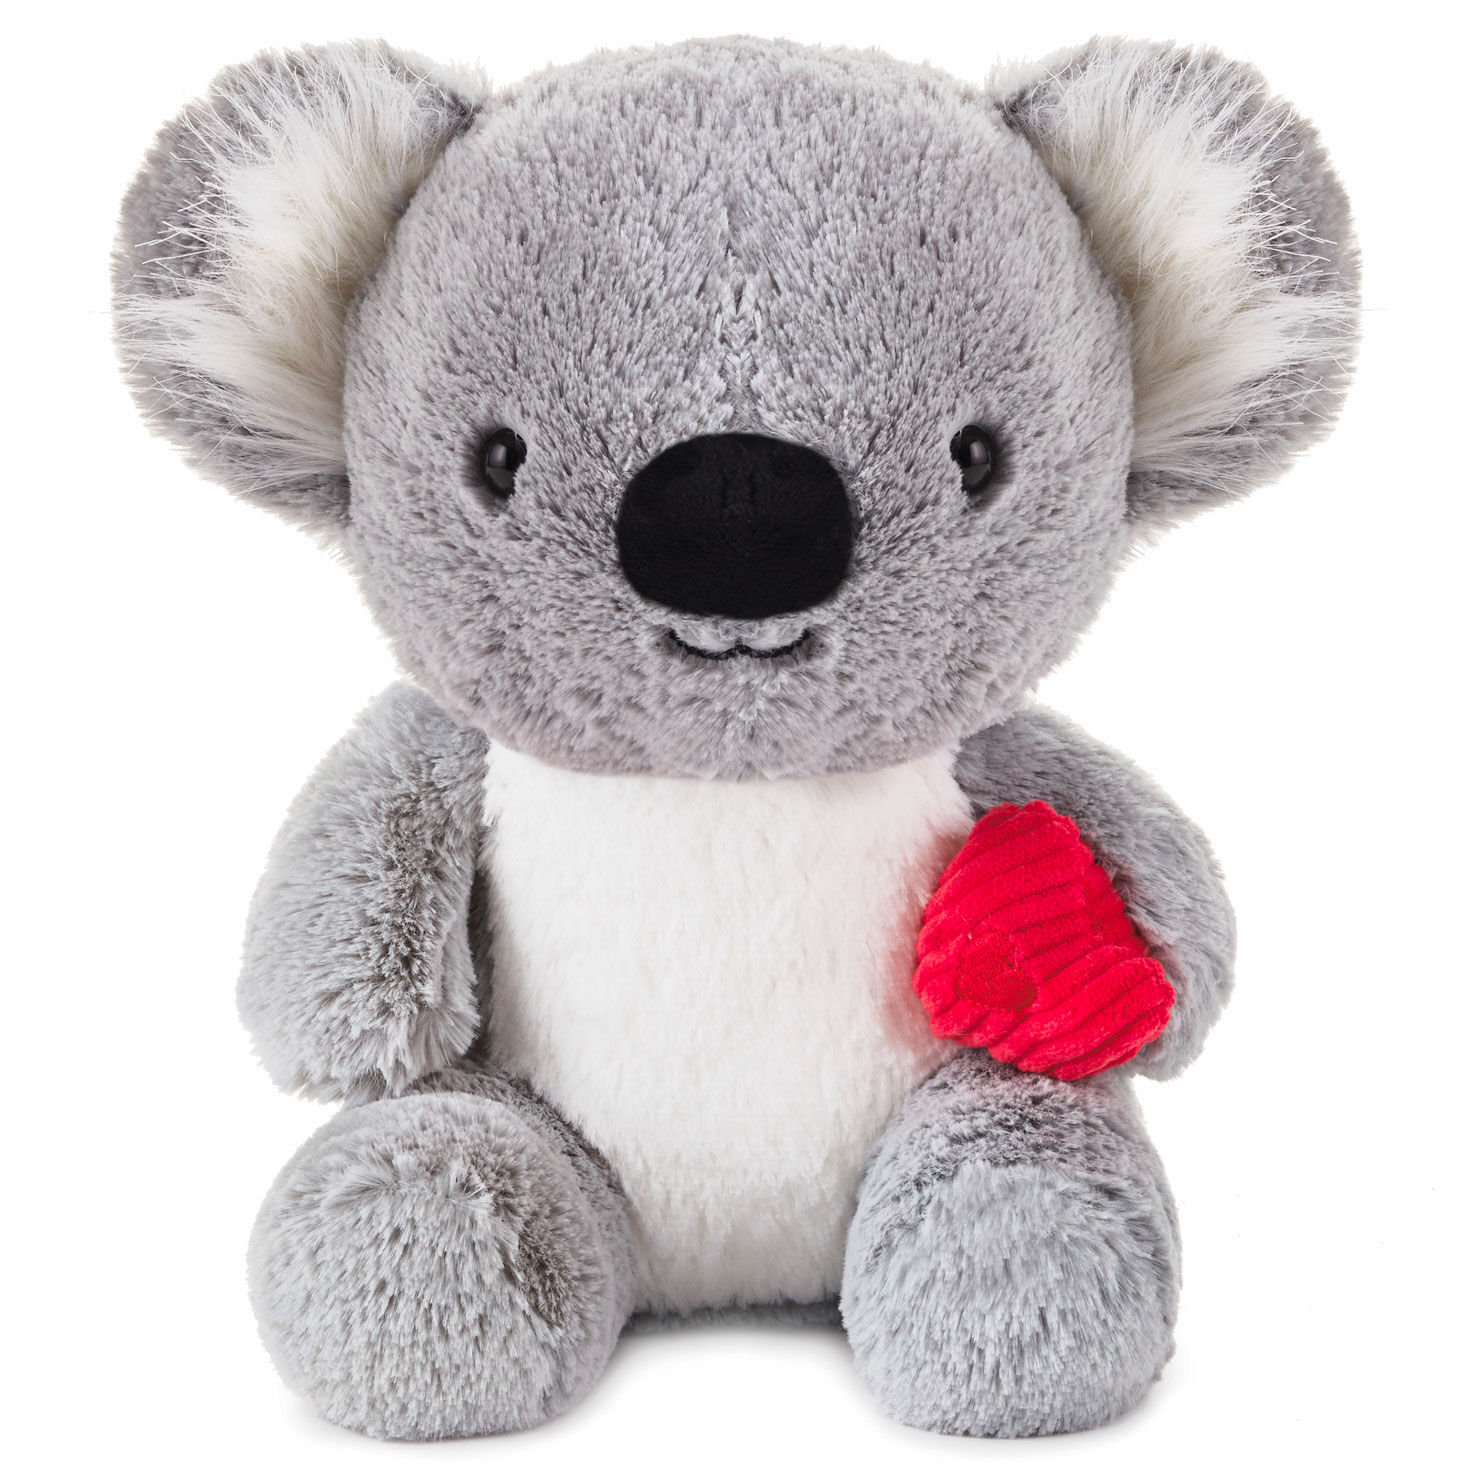 Cute Cuddly Soft Stuffed Teddy Bear w/ Message Hearts 